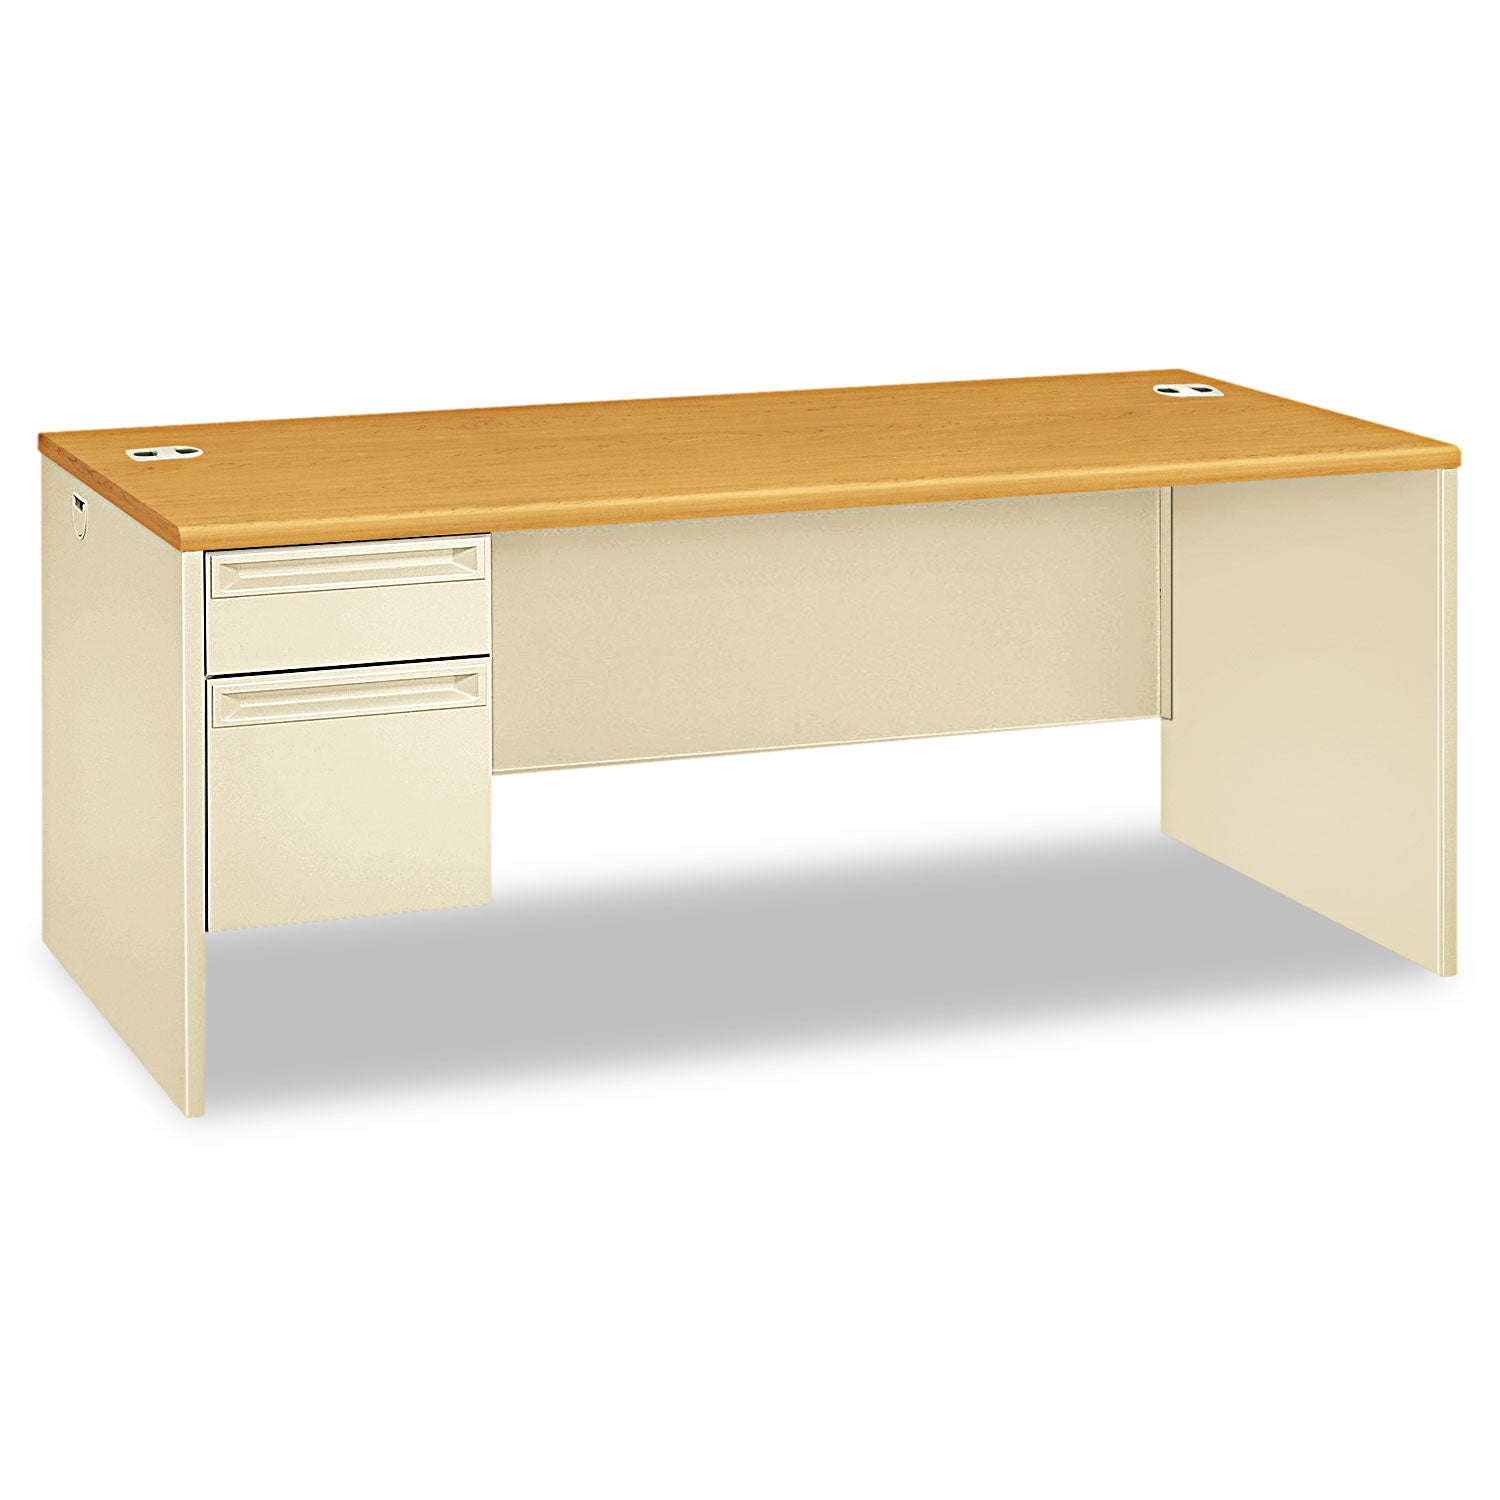 38000 Series Left Pedestal Desk, 72" x 36" x 29.5", Harvest/Putty - 